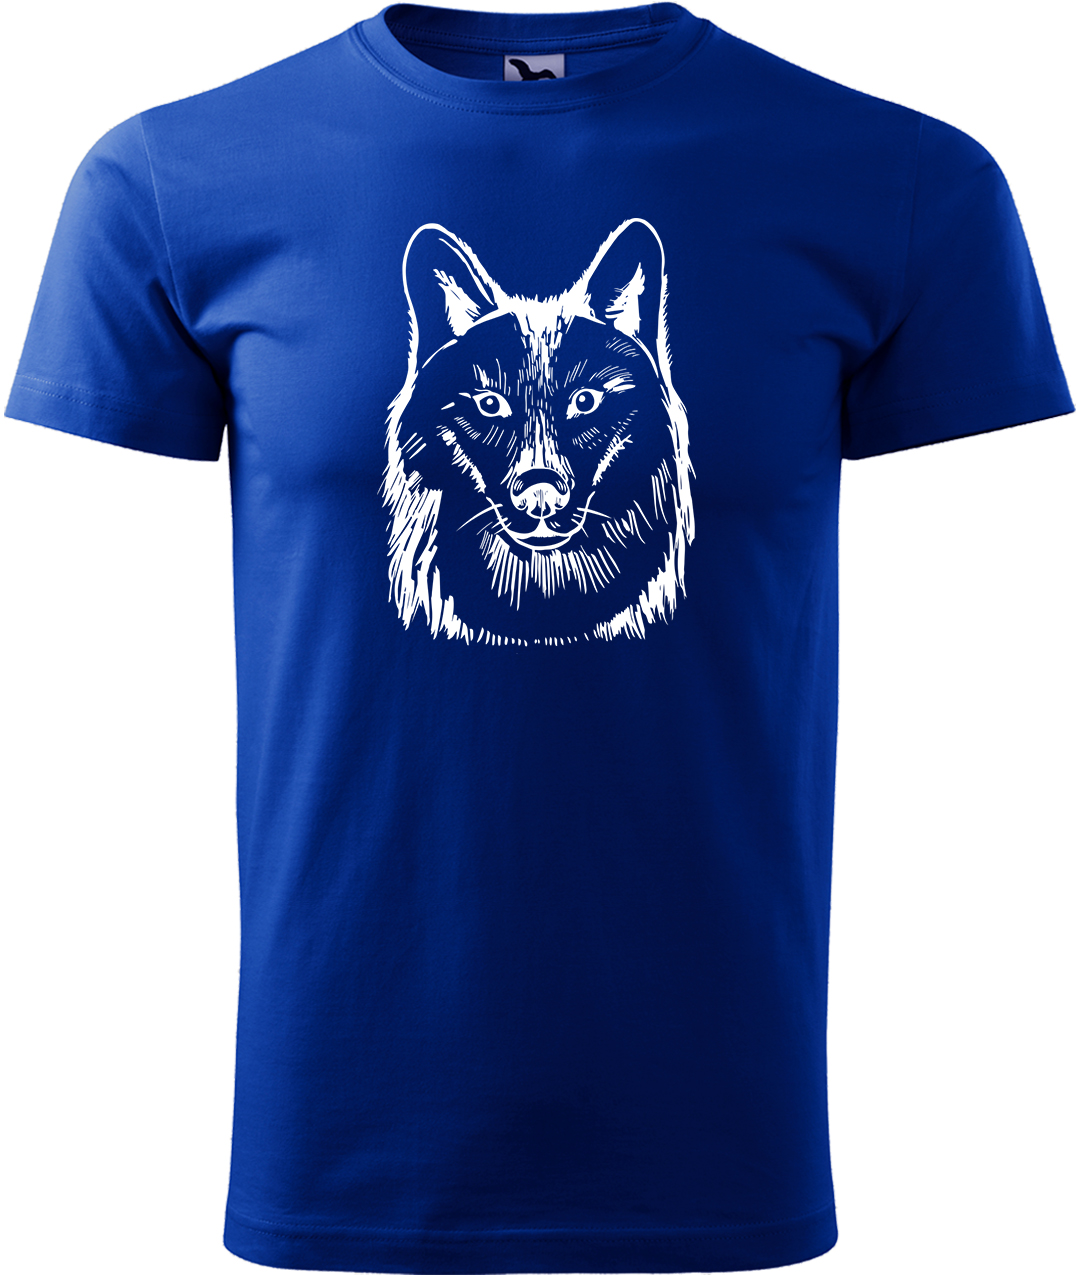 Pánské tričko s vlkem - Kresba vlka Velikost: XL, Barva: Královská modrá (05), Střih: pánský